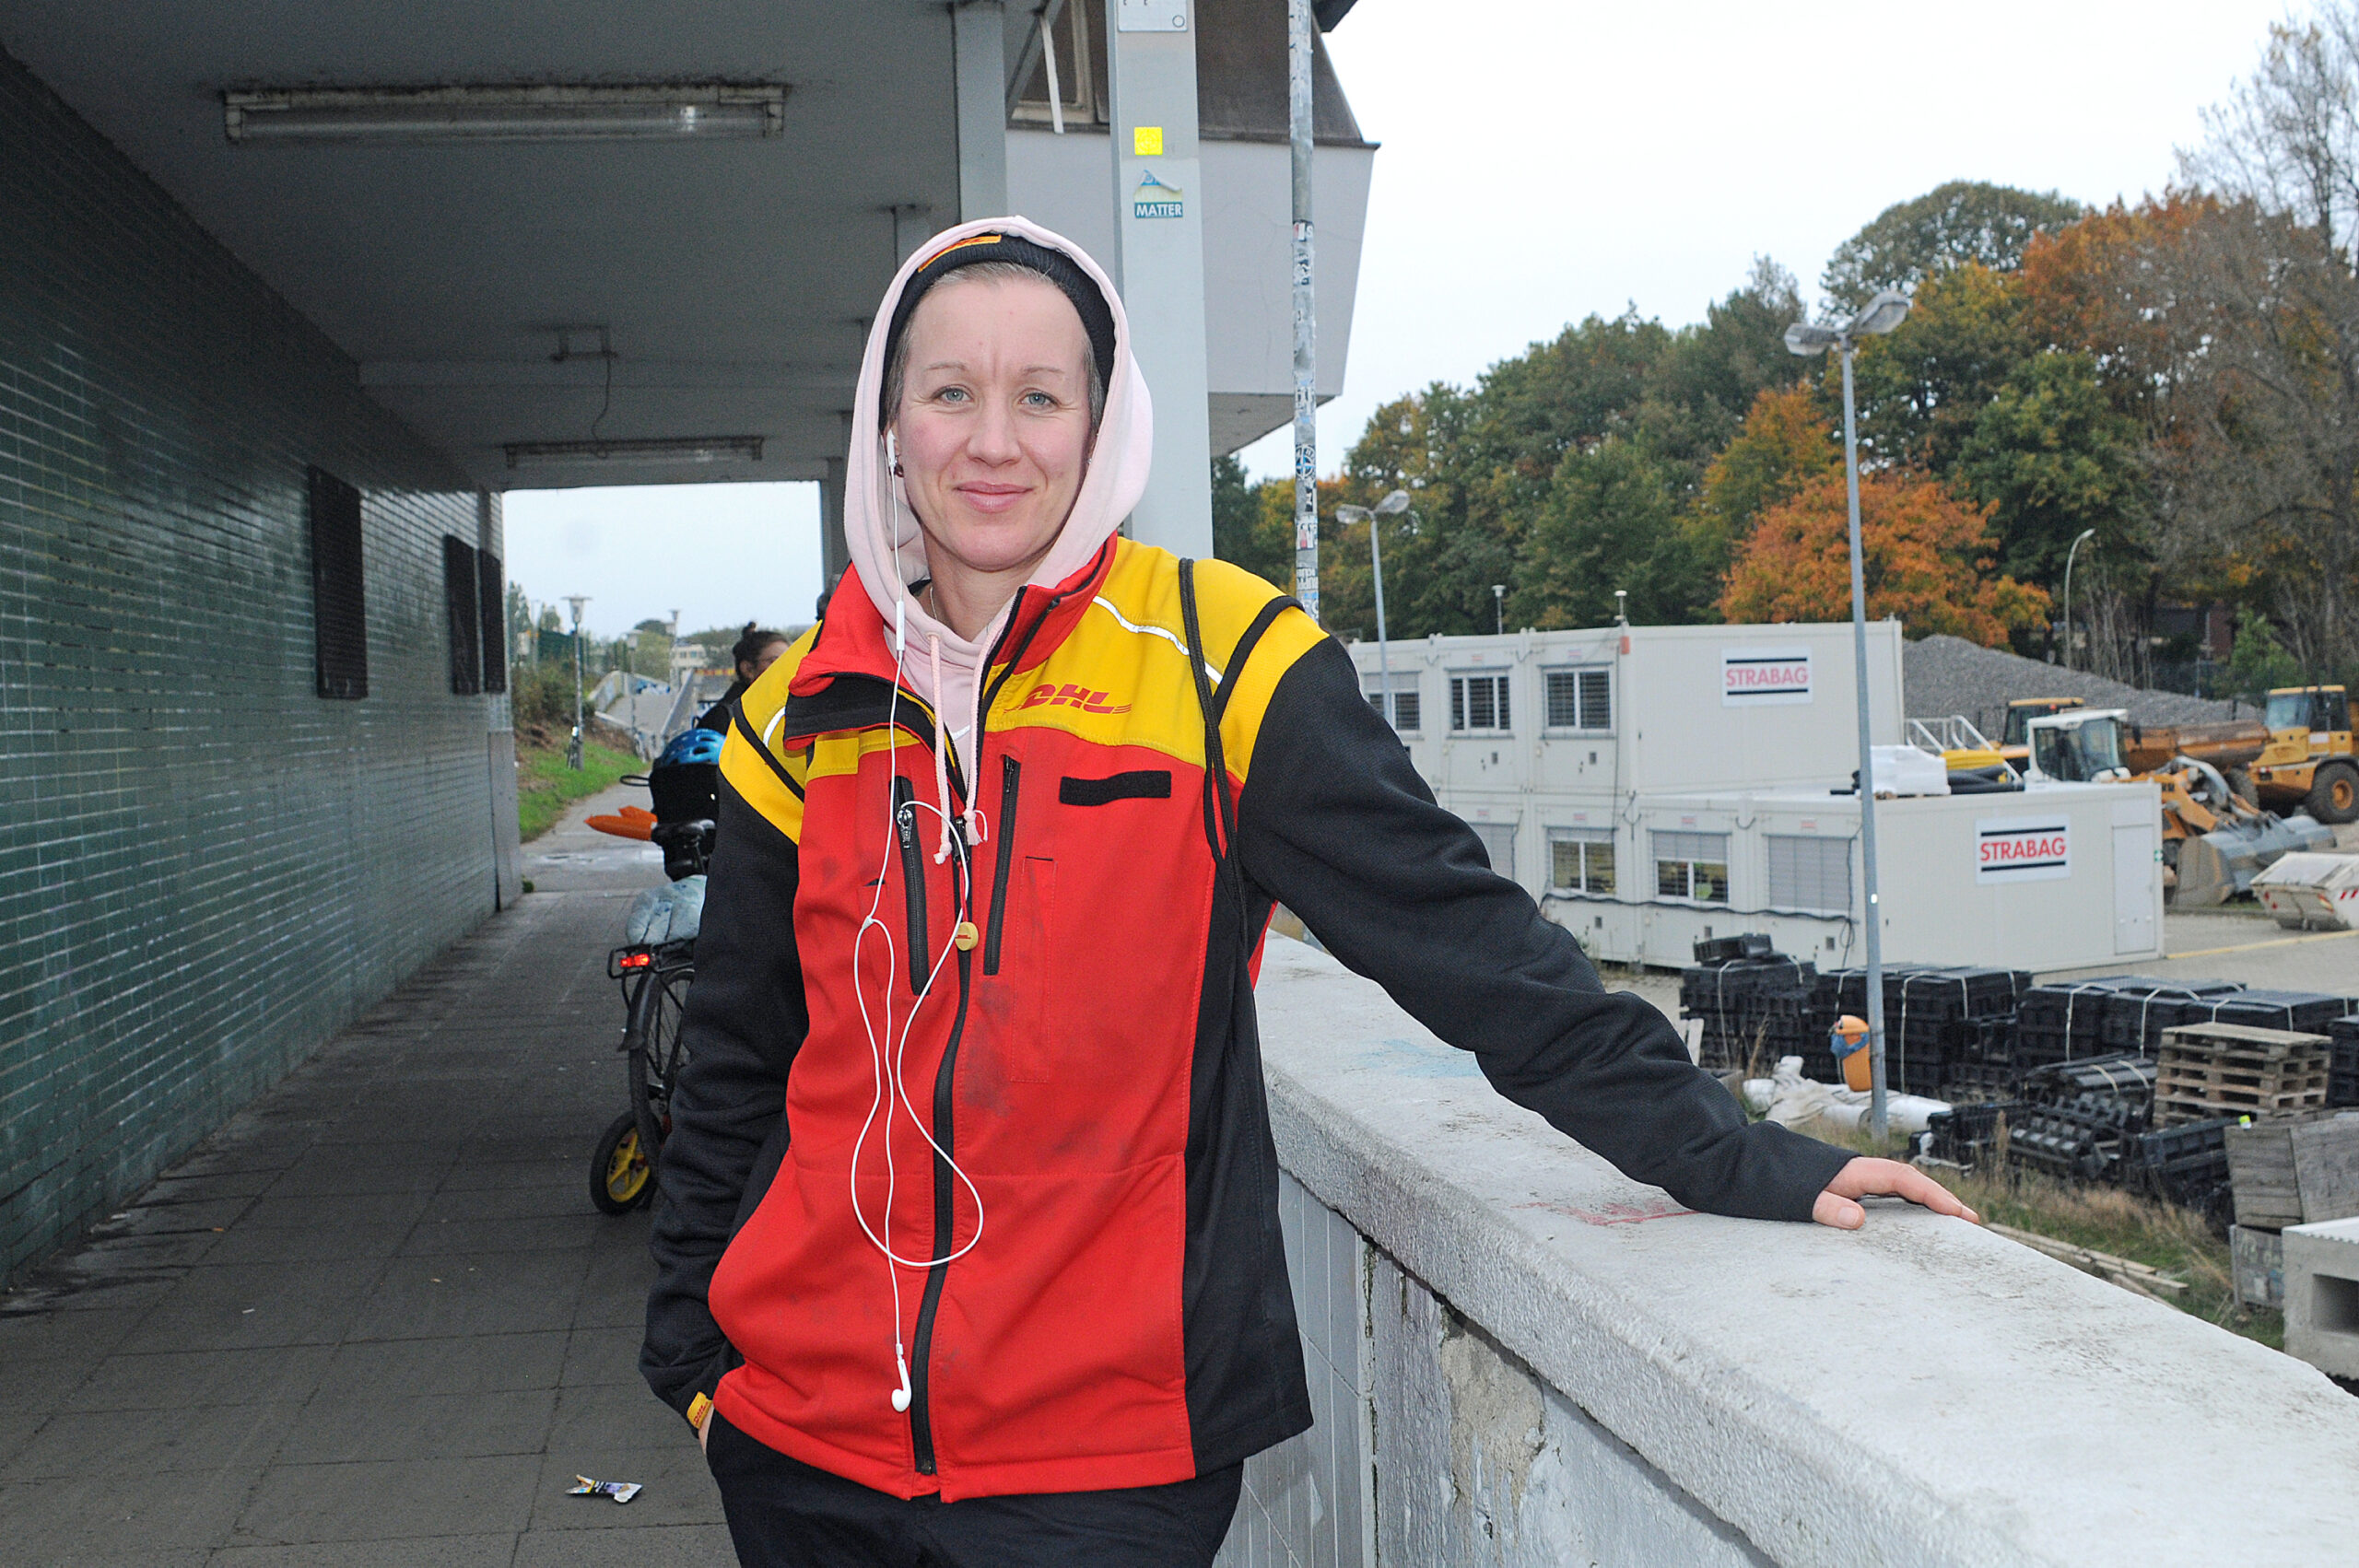 Paketzustellerin Nadia Hoyer (40) aus Langenfelde befürchtet, dass auch viele ihrer Kollegen von den Diebsteich-Plänen betroffen sind.